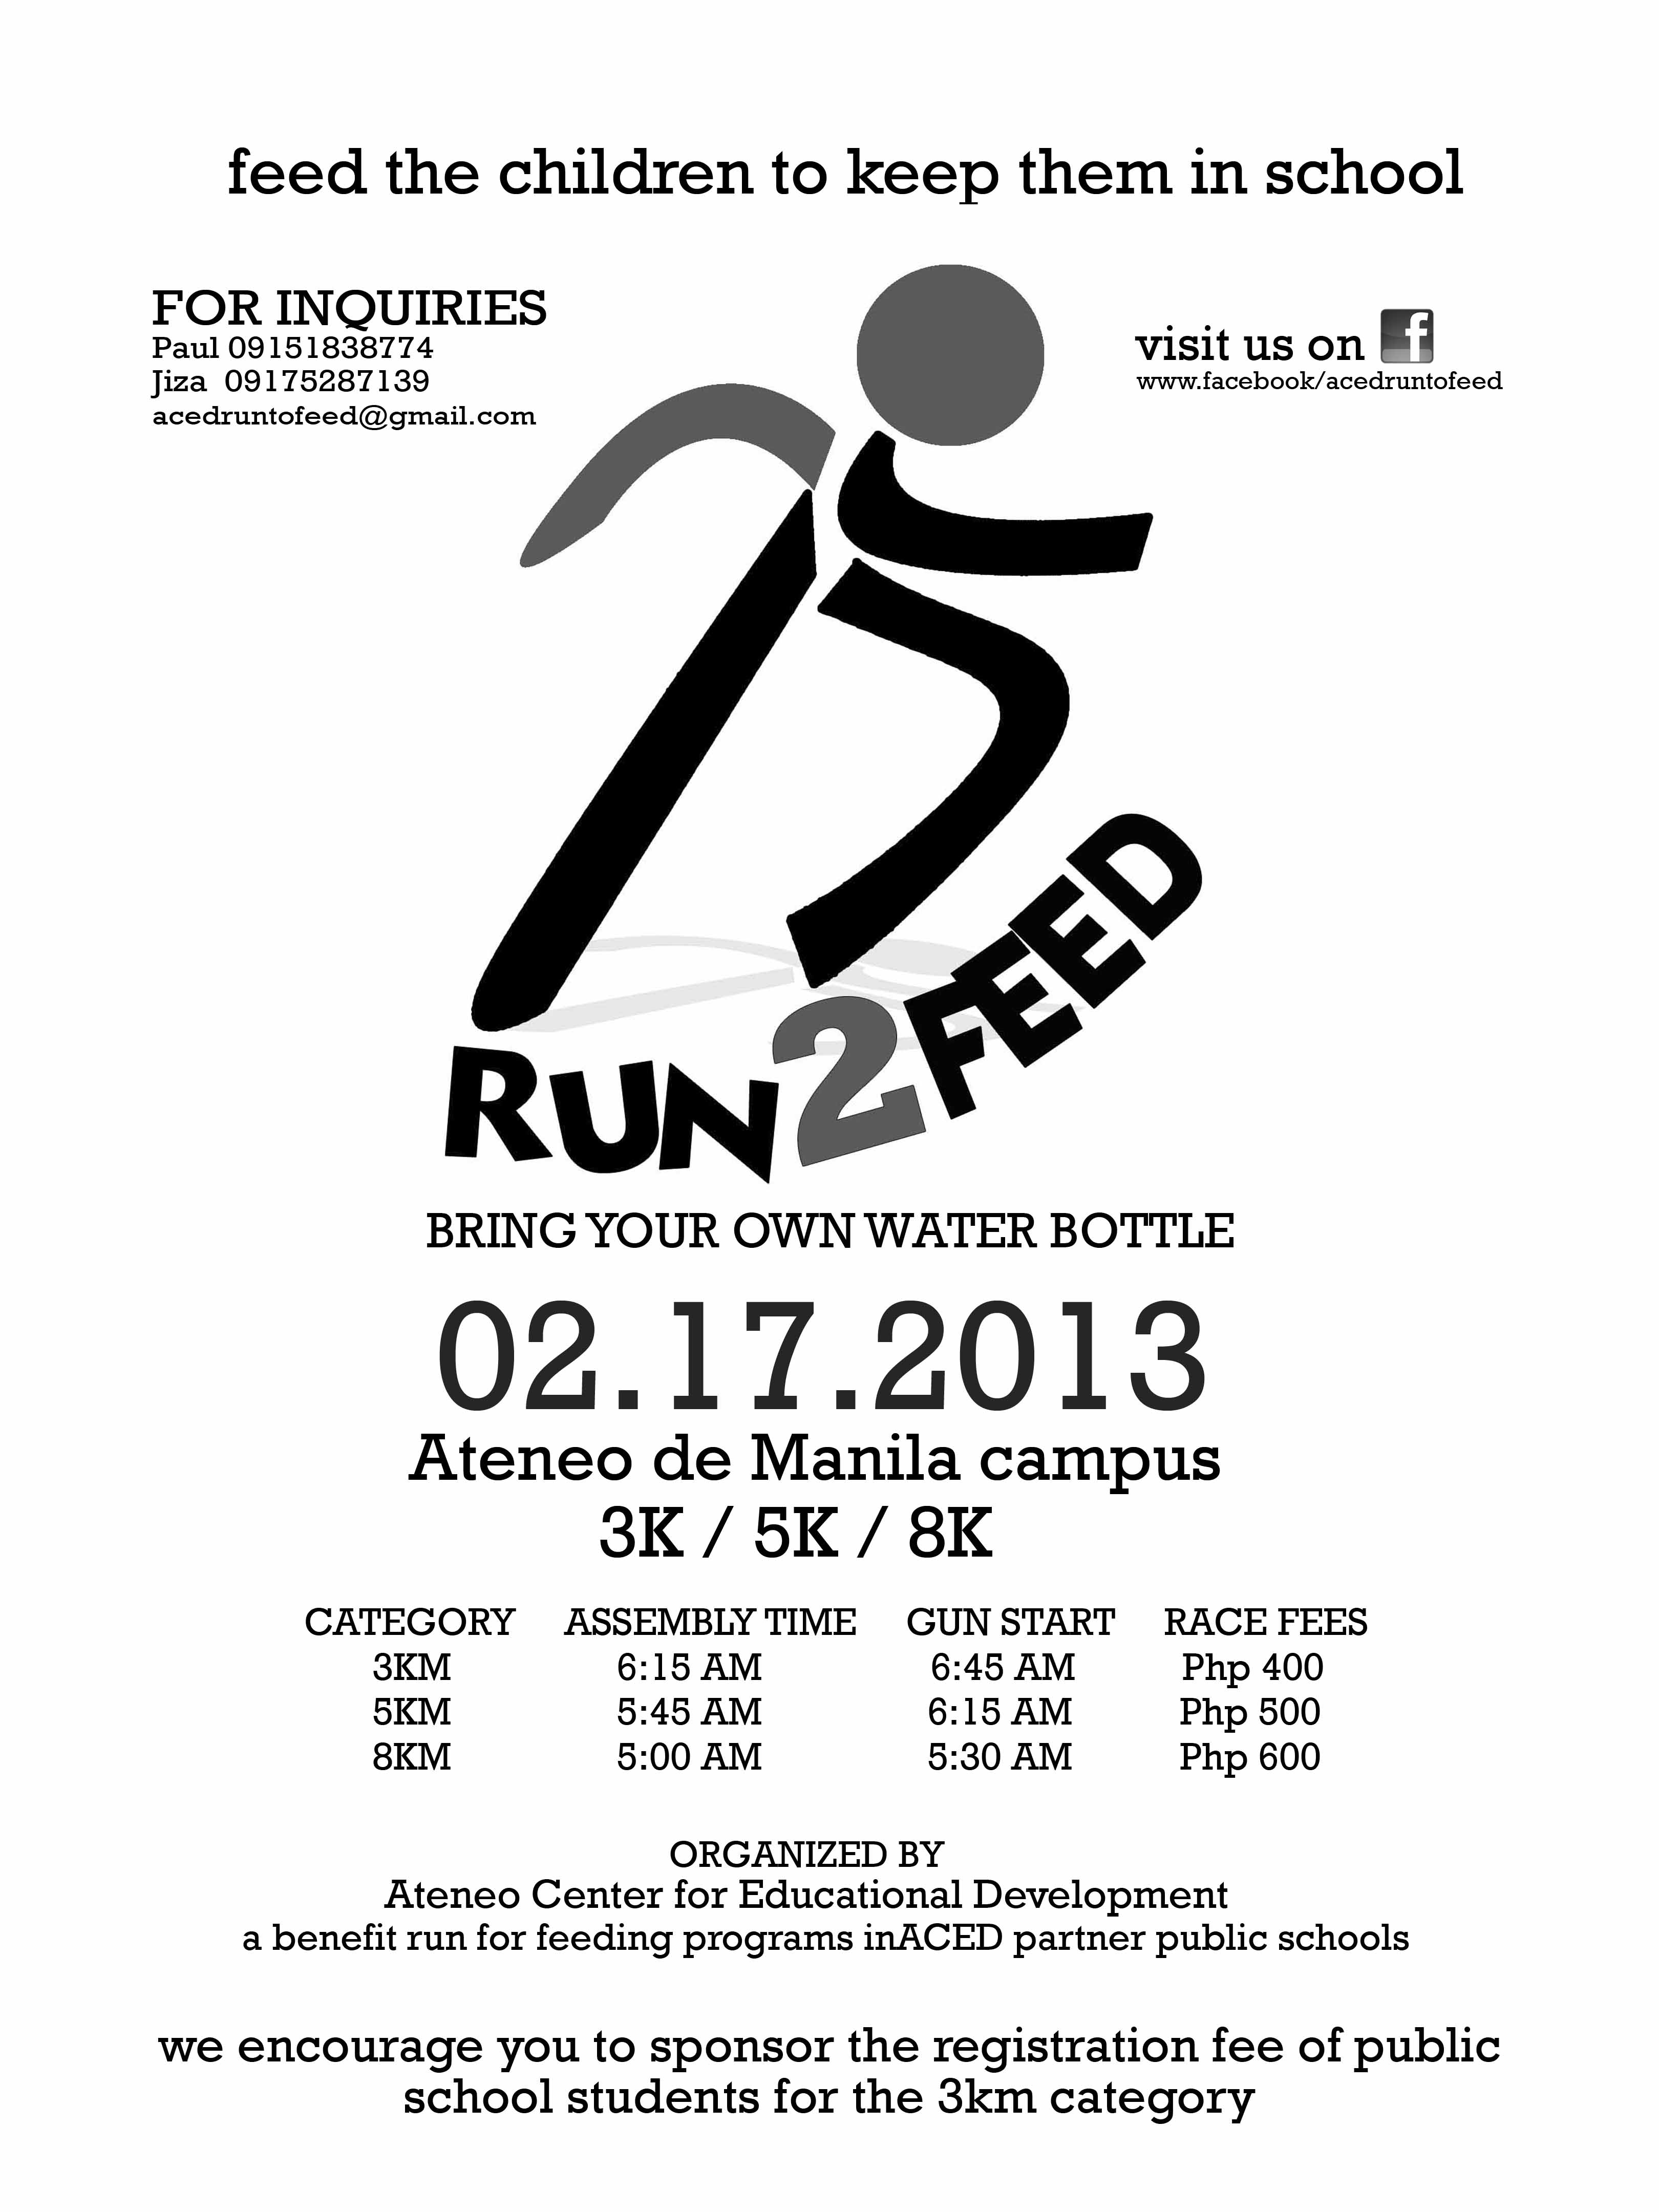 run-2-feed-2013-poster